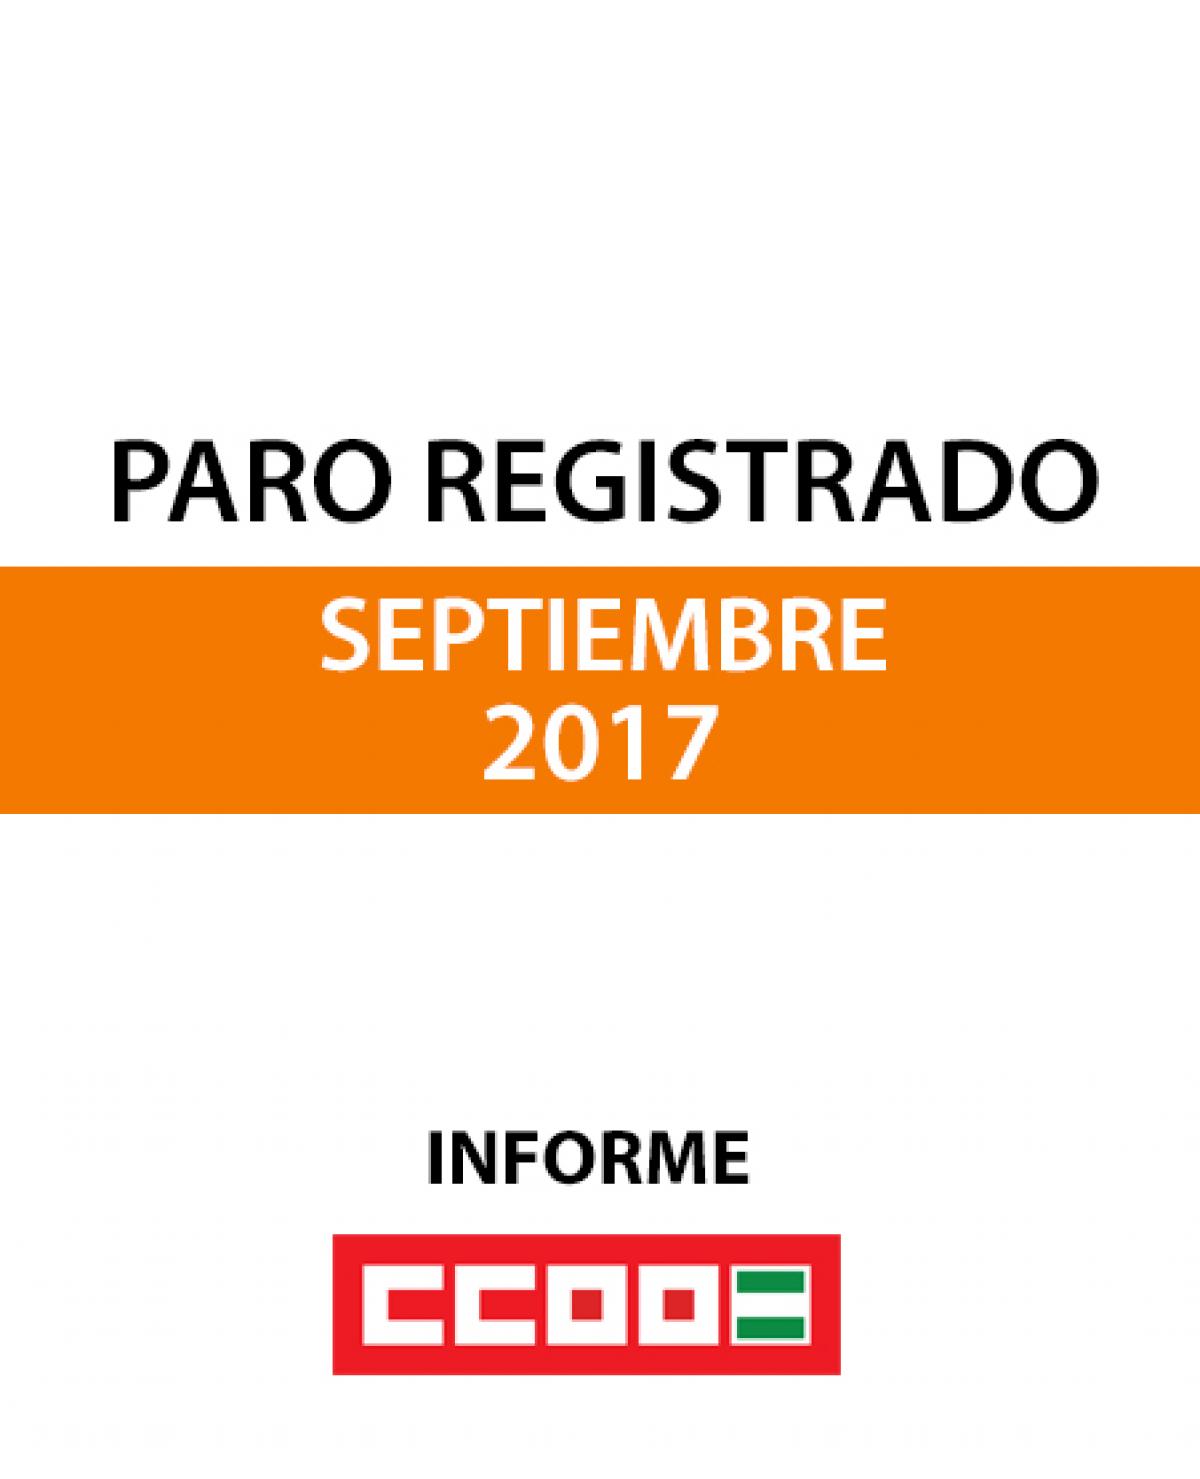 Paro registrado septiembre 2017